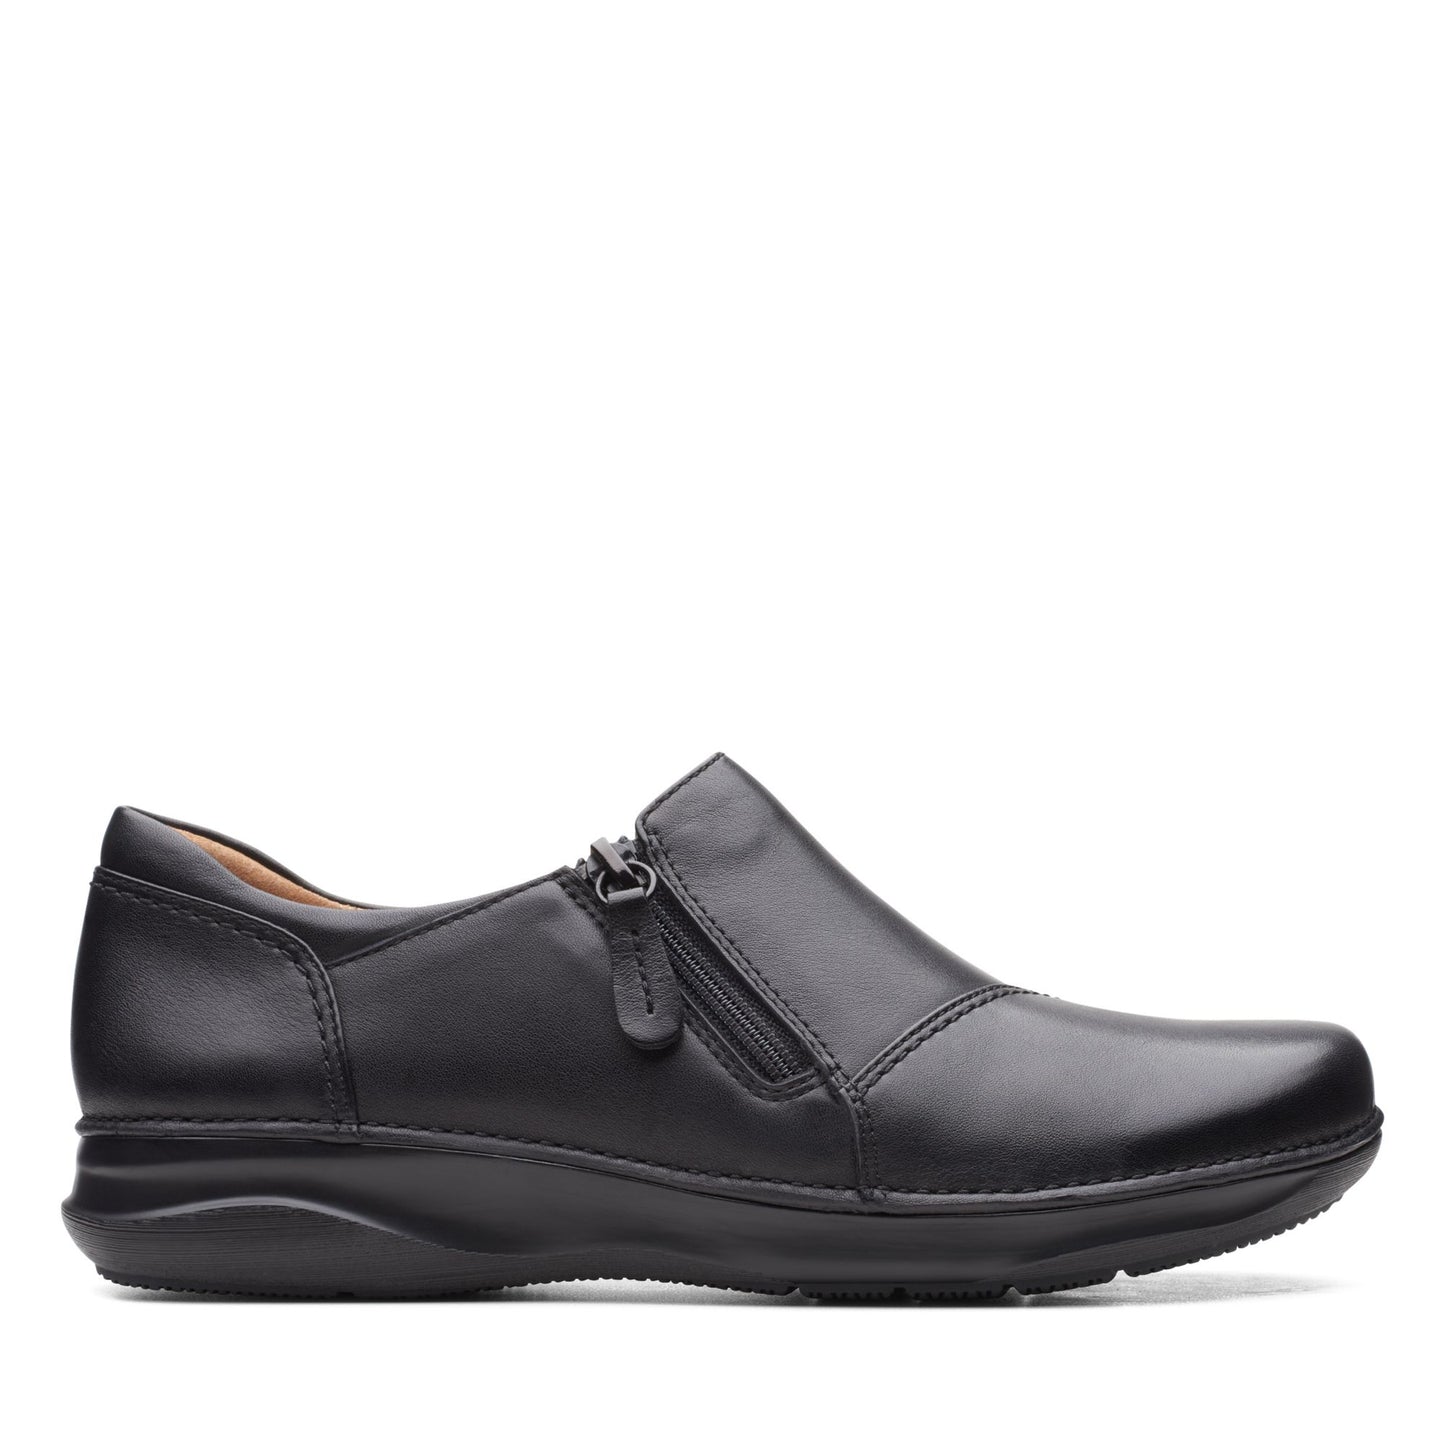 Zapatos Sin Cordones On Shoes De La Marca Clarks Para Mujer Modelo Appley Zip Black Leather En Color Negro